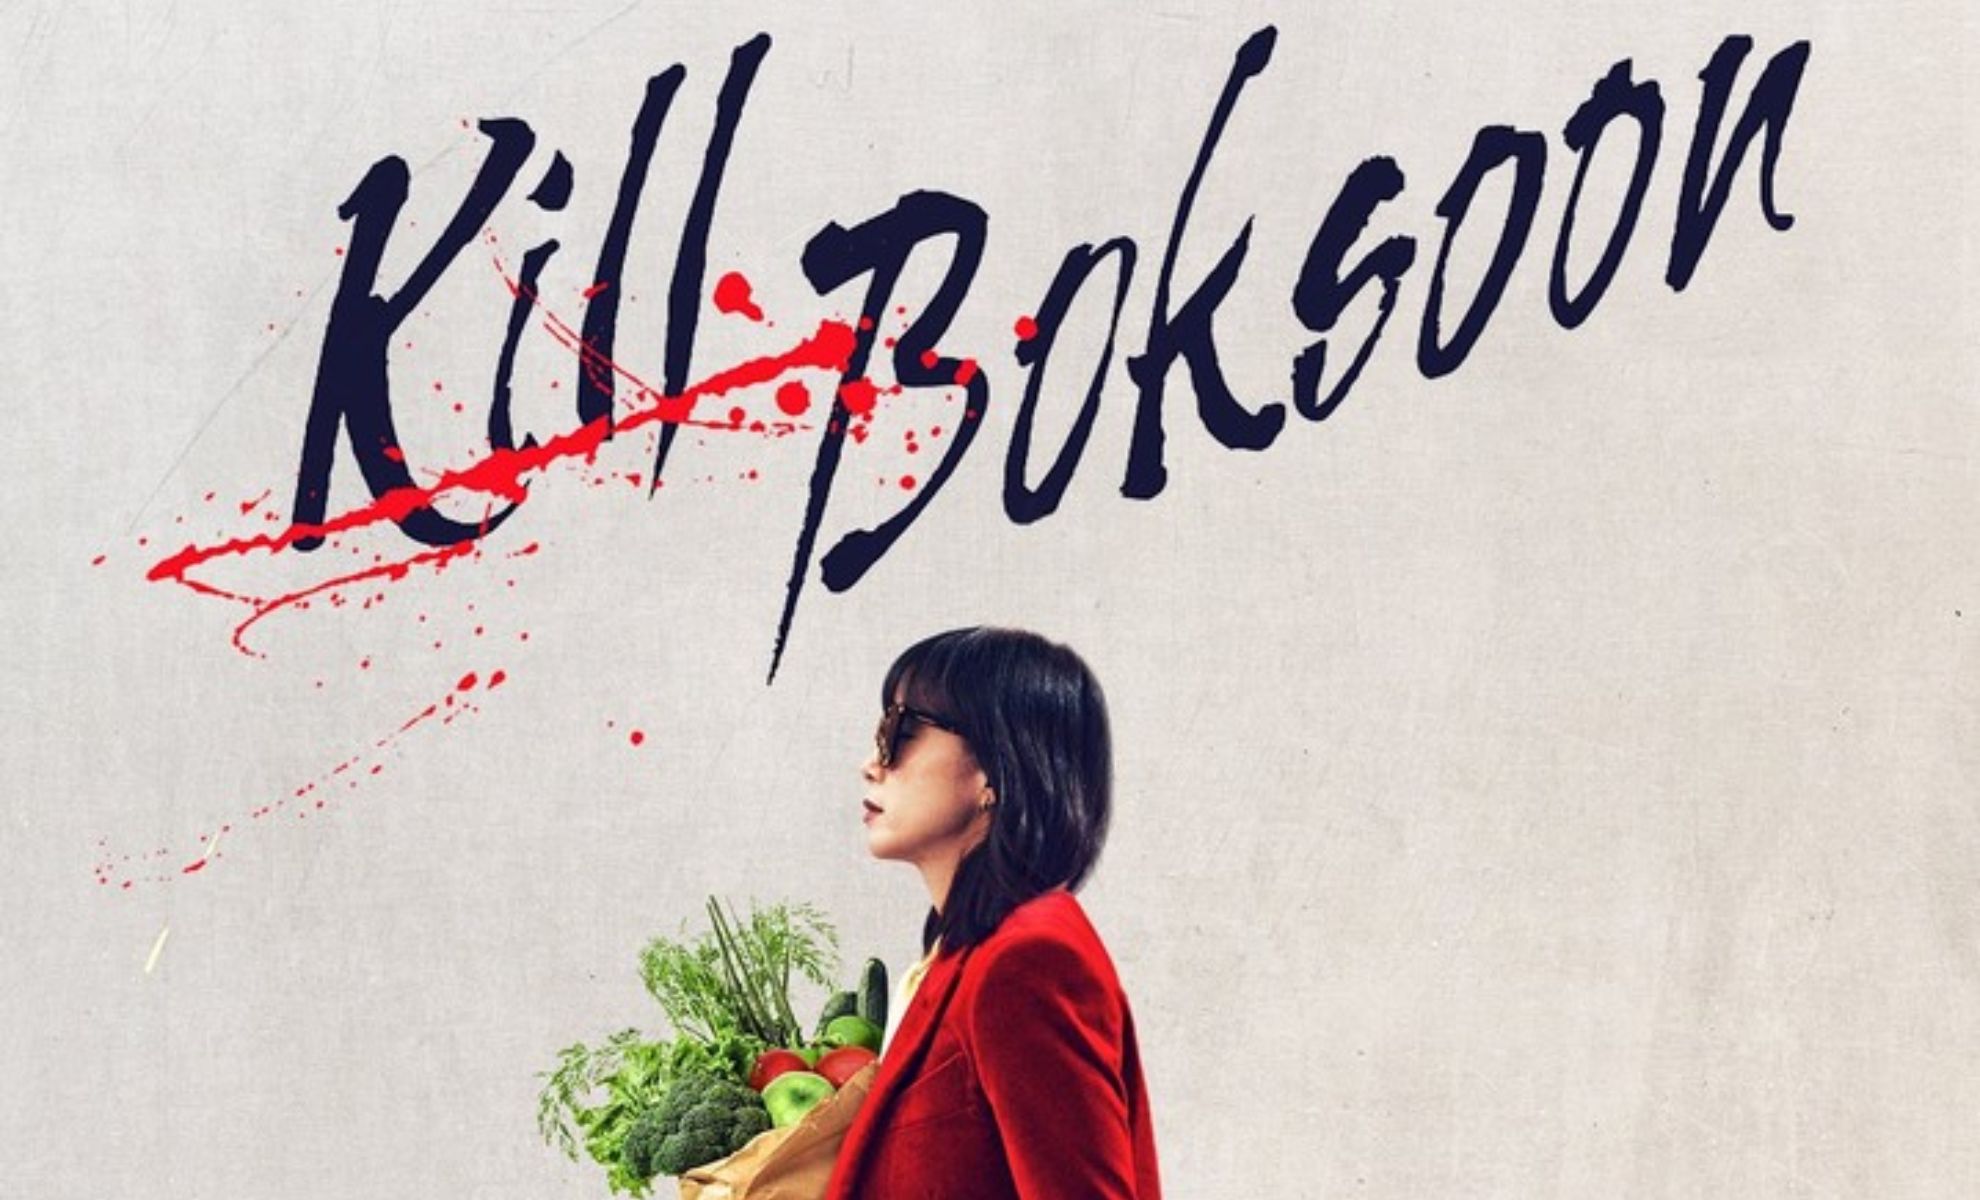 Kill Bok-soon un nouveau film explosif sur Netflix !